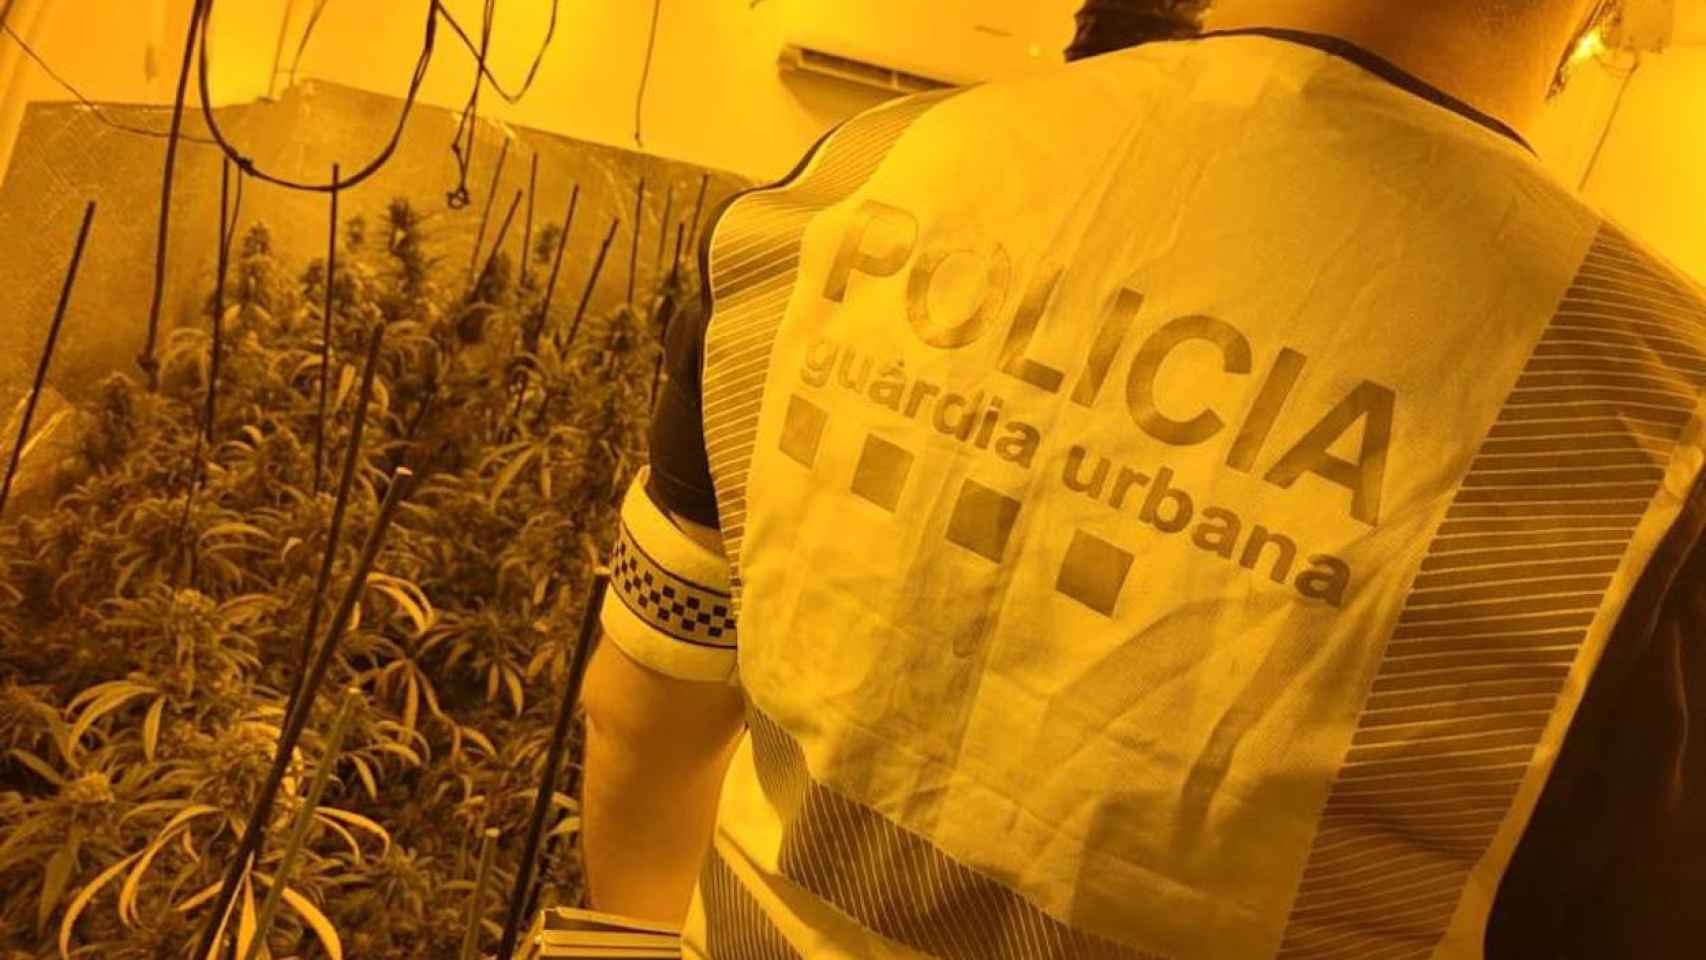 Un agente en una de las plantaciones de marihuana desmanteladas / GUARDIA URBANA